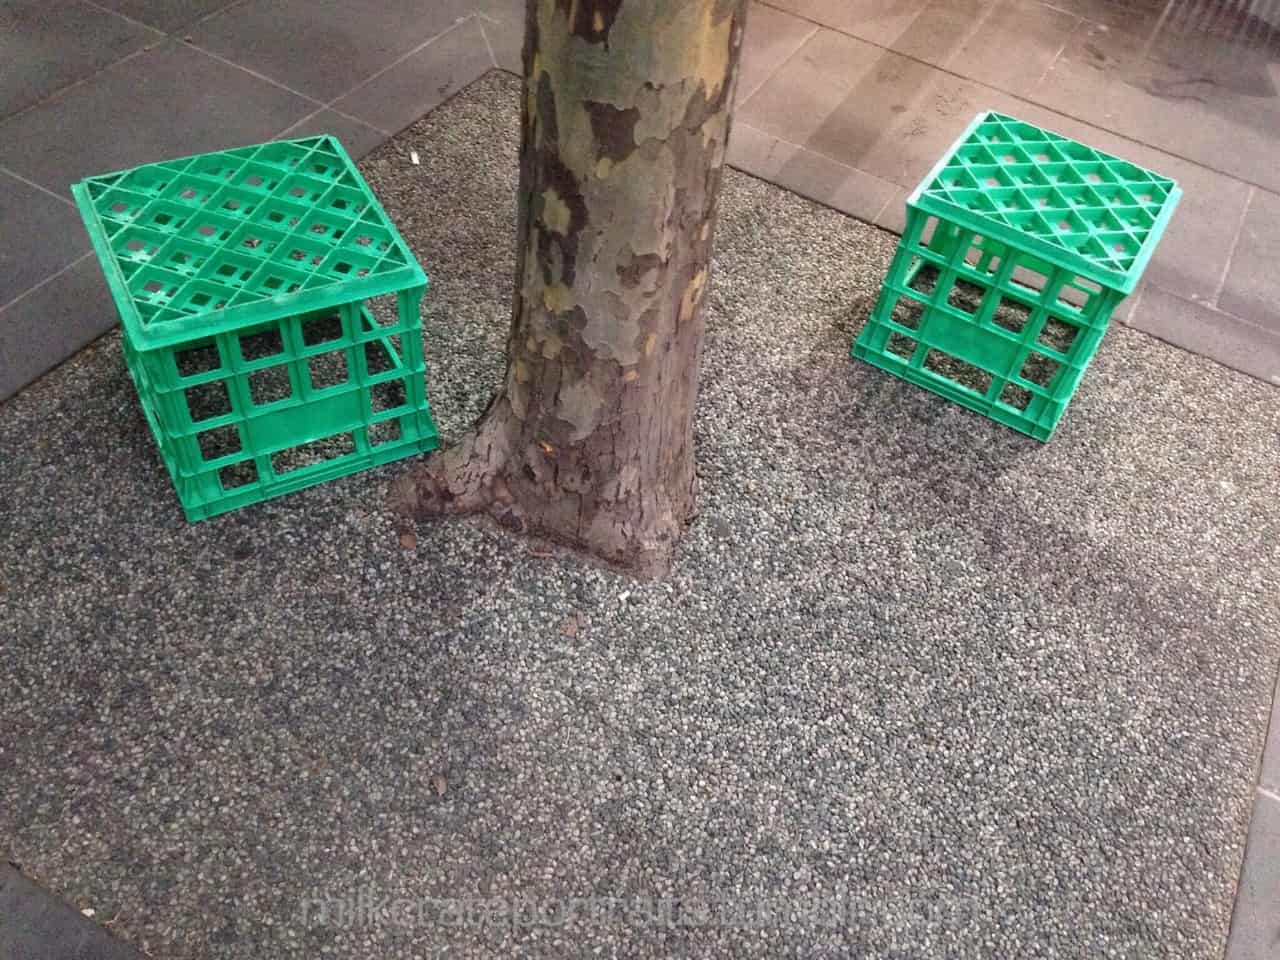 Green crates